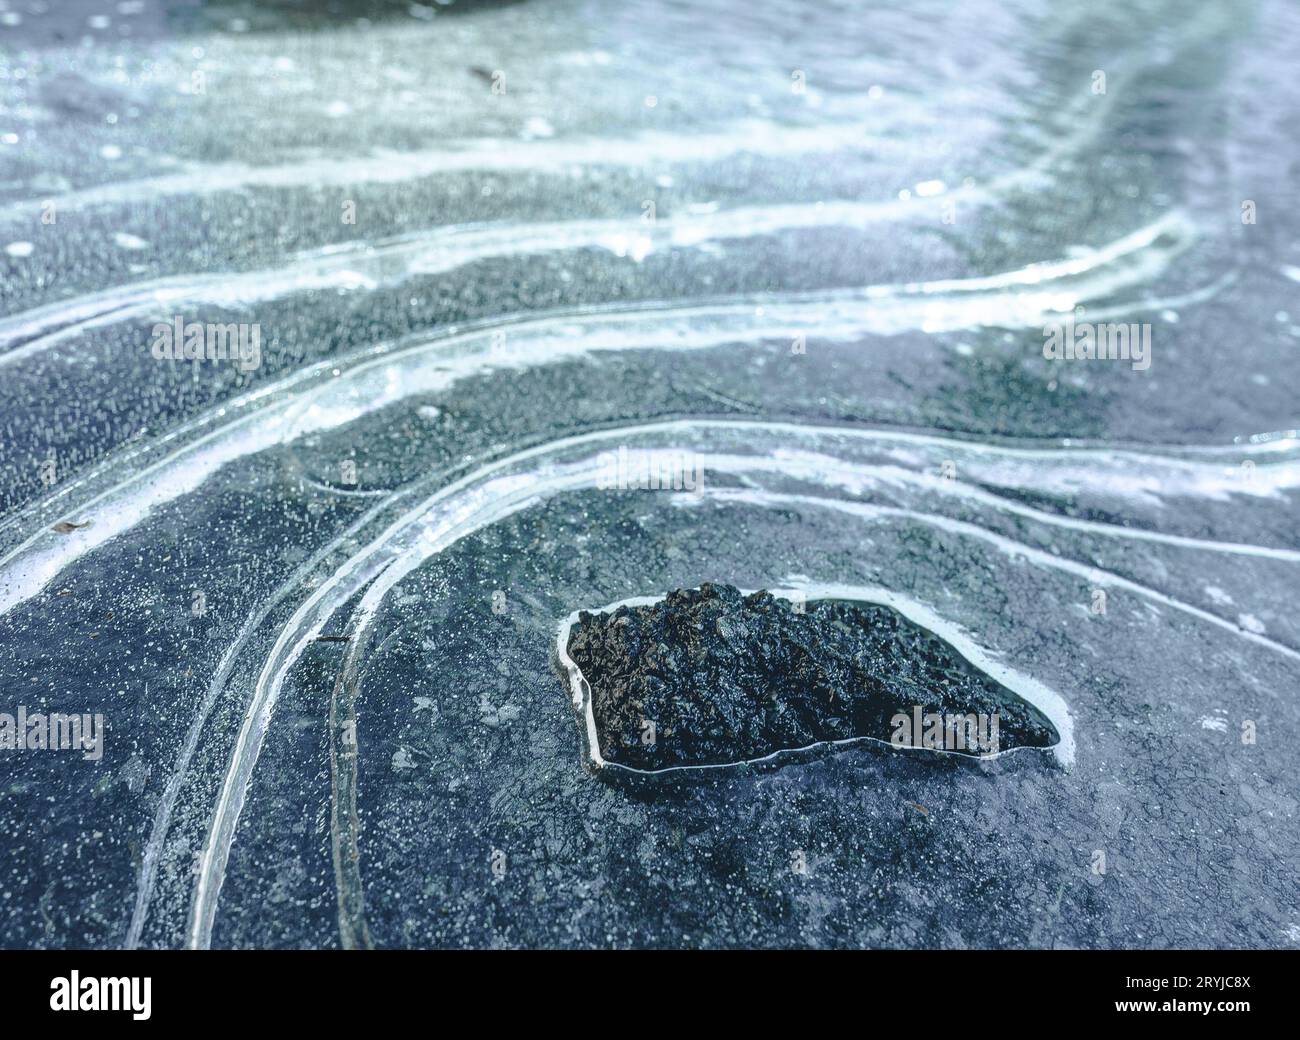 Formazione rocciosa scura e aspra in mezzo a un paesaggio ghiacciato di curve ghiacciate e neve. Contrasto dei colori nero, bianco e blu c Foto Stock